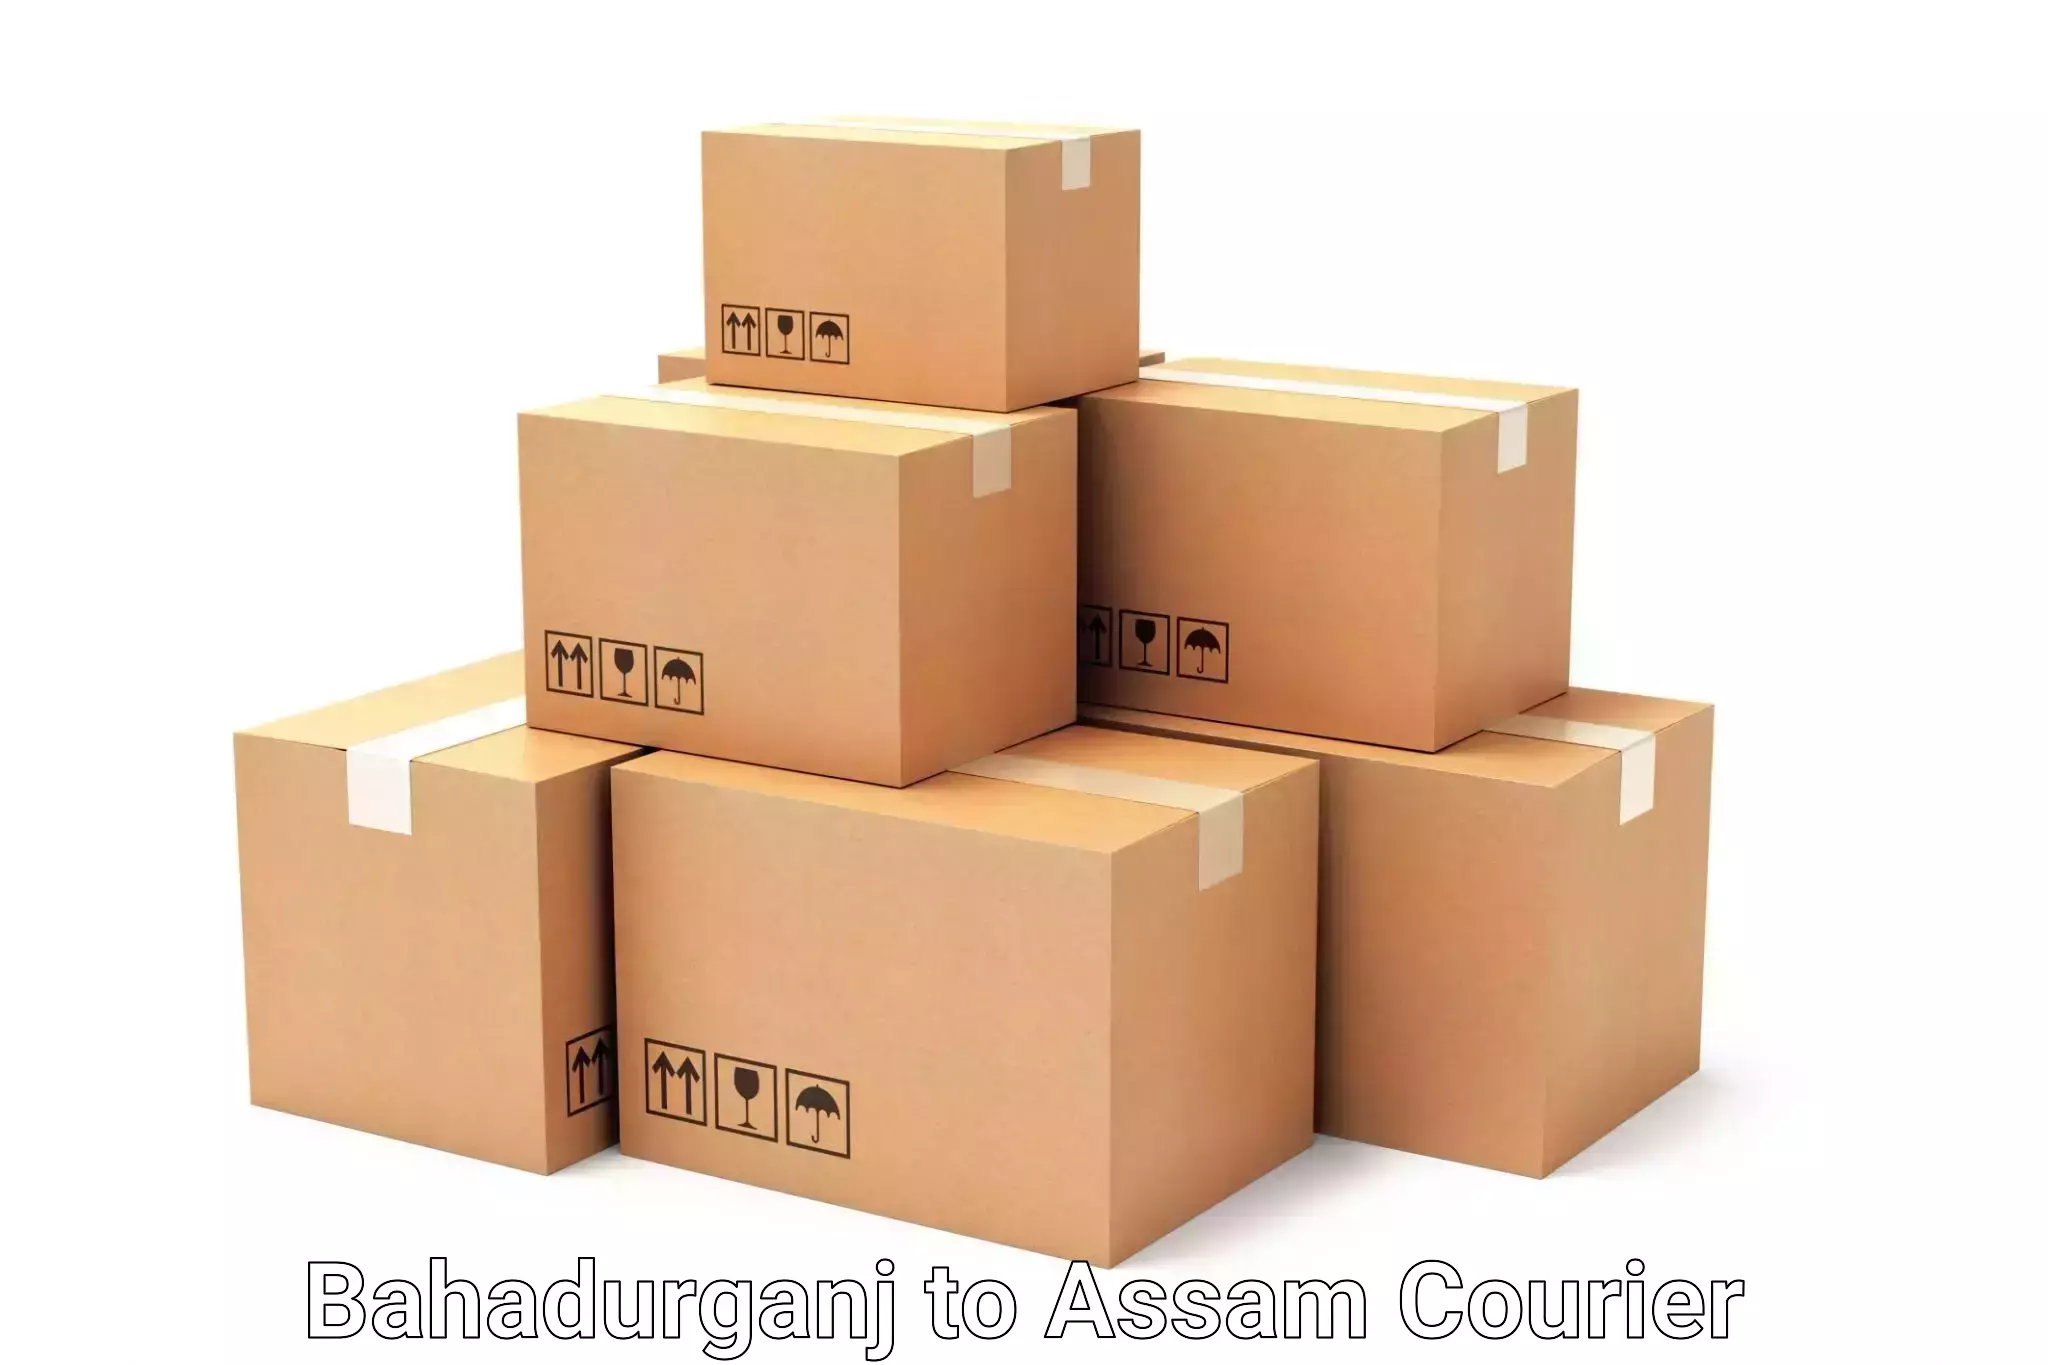 Baggage delivery optimization Bahadurganj to Rupai Siding